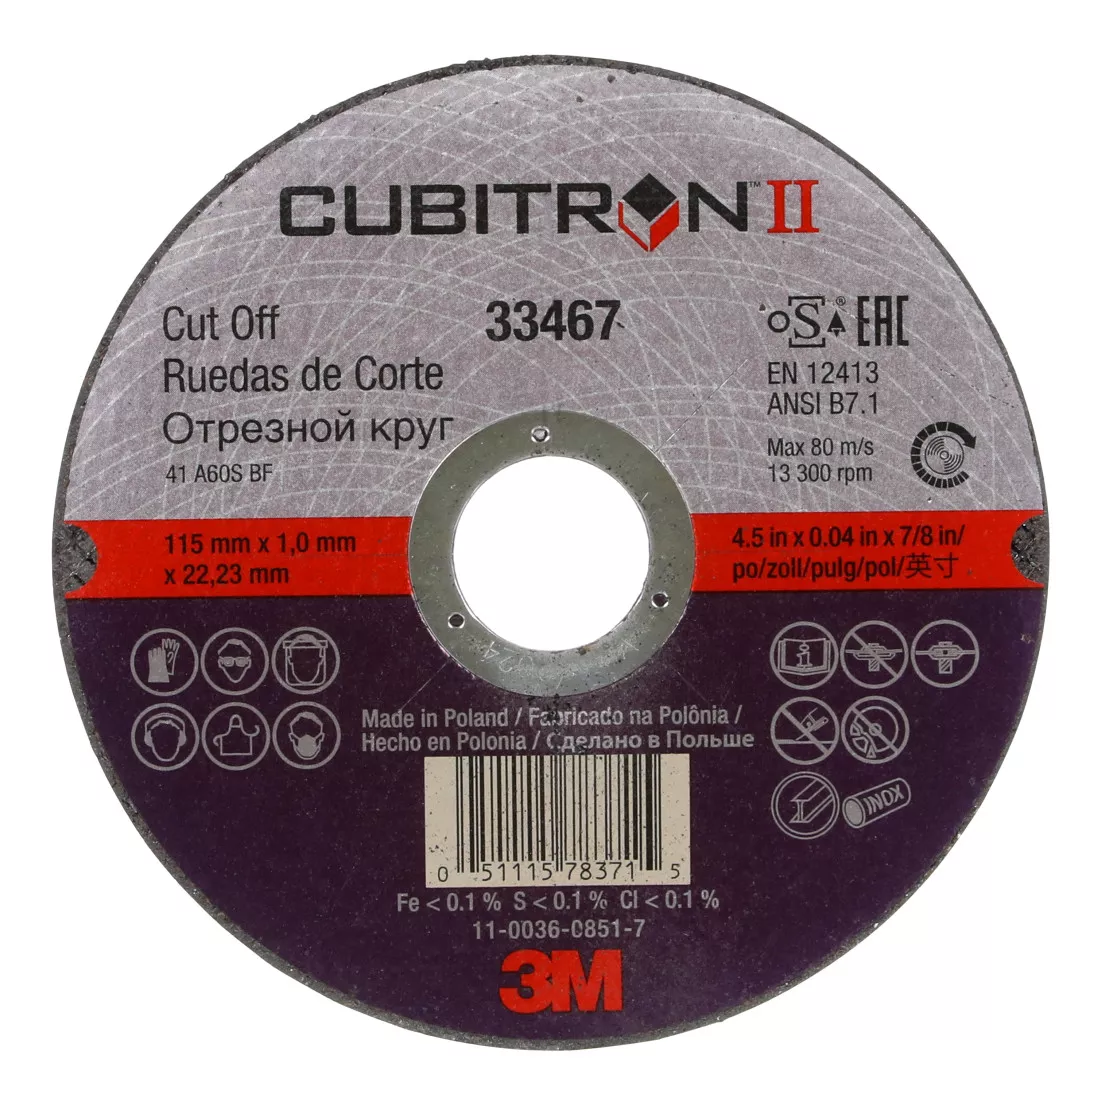 3M™ Cubitron™ II Cut-Off Wheel, 33467, 4.5 in x 0.04 in x 7/8 in, 5 per
pack, 6 packs per case